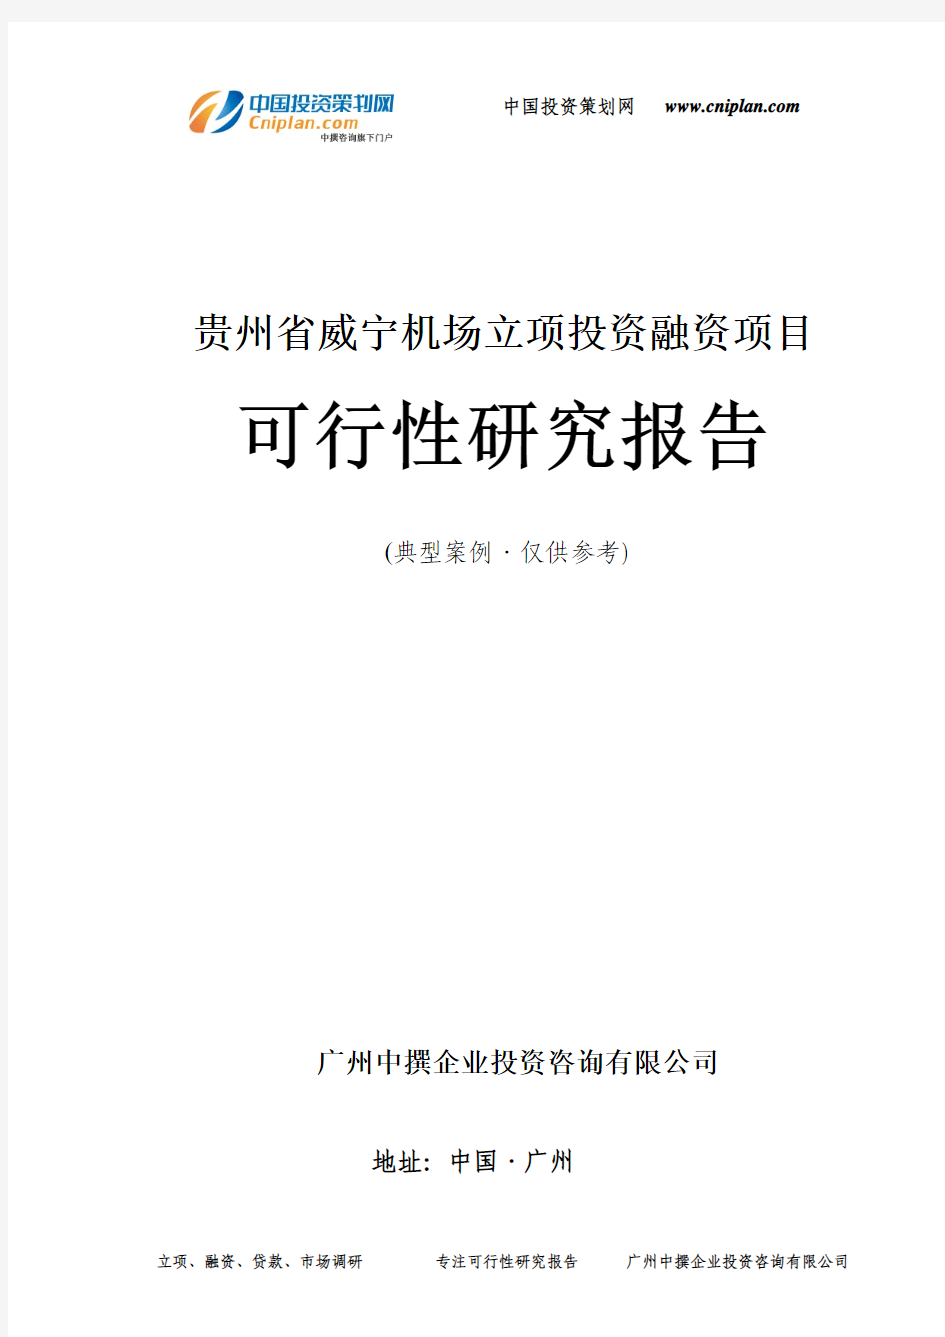 贵州省威宁机场融资投资立项项目可行性研究报告(中撰咨询)